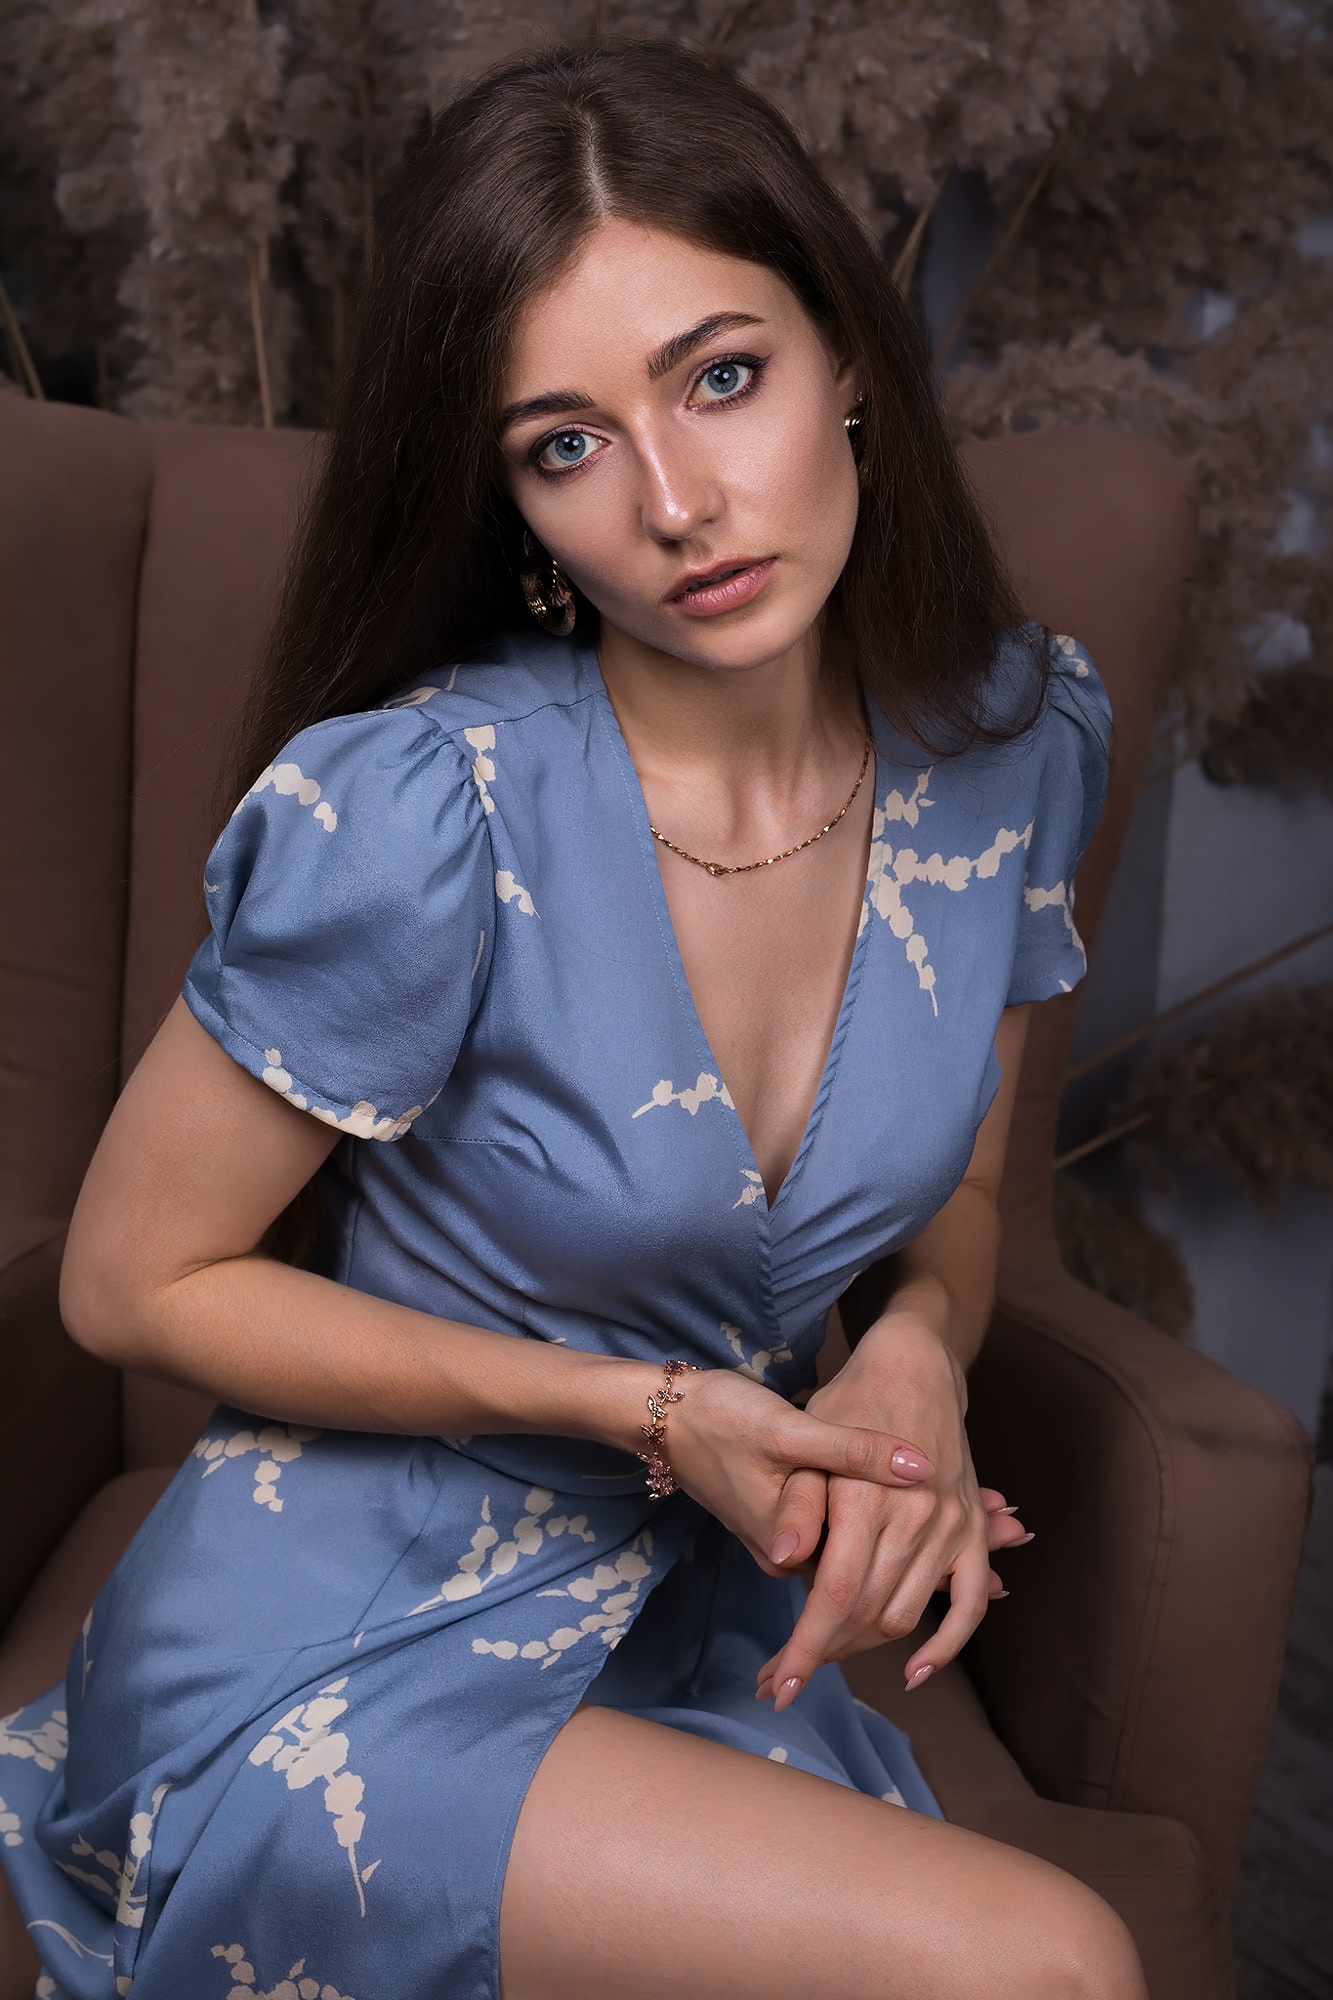 Dmitry Shulgin Women Brunette Long Hair Straight Hair Dress Blue Clothing Makeup Dmitry Sn Blue Eyes 1333x2000